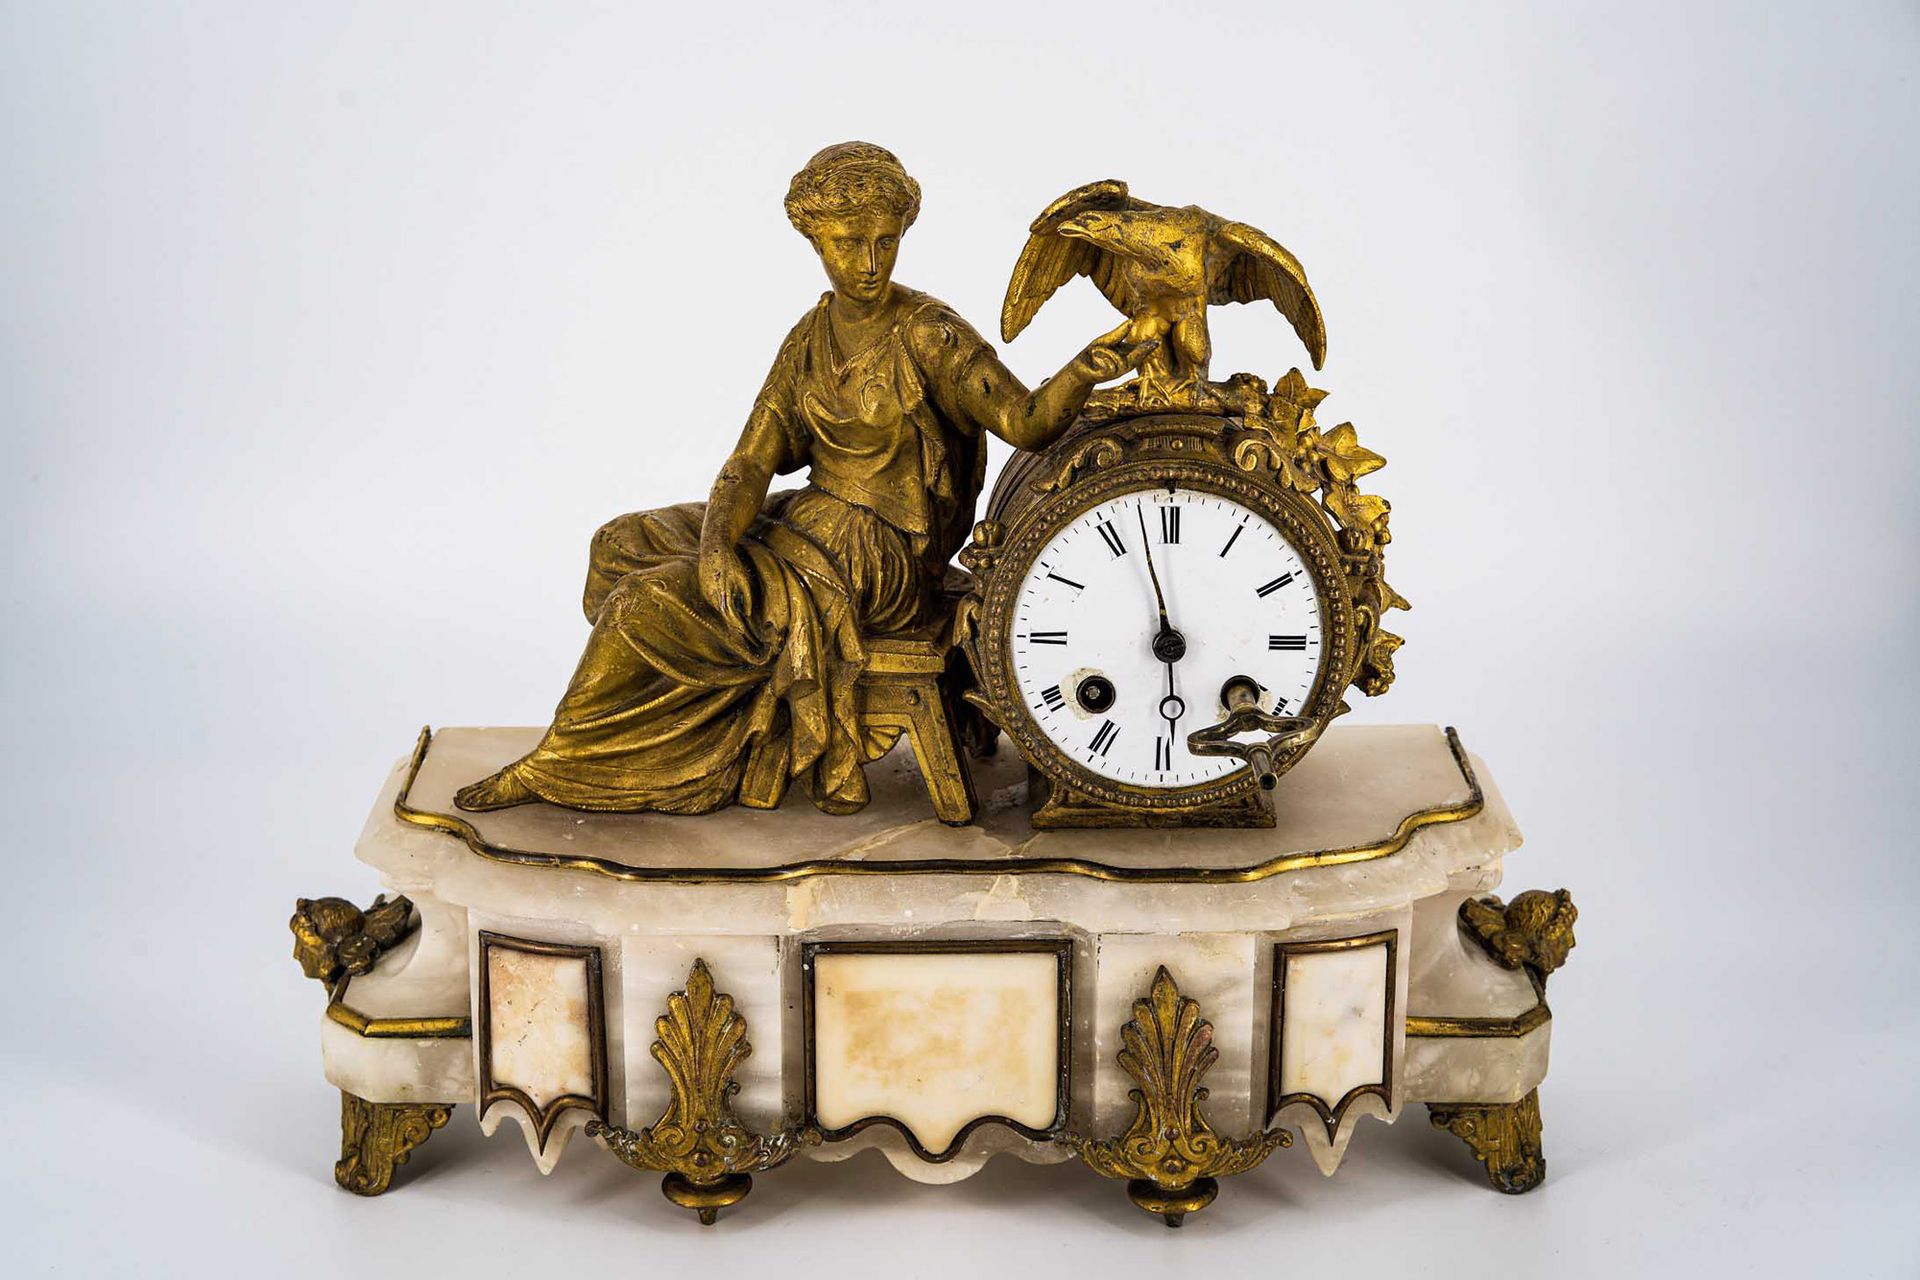 Null 装饰品时钟

法国 19世纪末

锑和雪花石膏镀金，女性坐像面向左边，正在喂鹰，在一个有铜面具和脚的成形底座上

高29厘米

 

S. Marti&hellip;